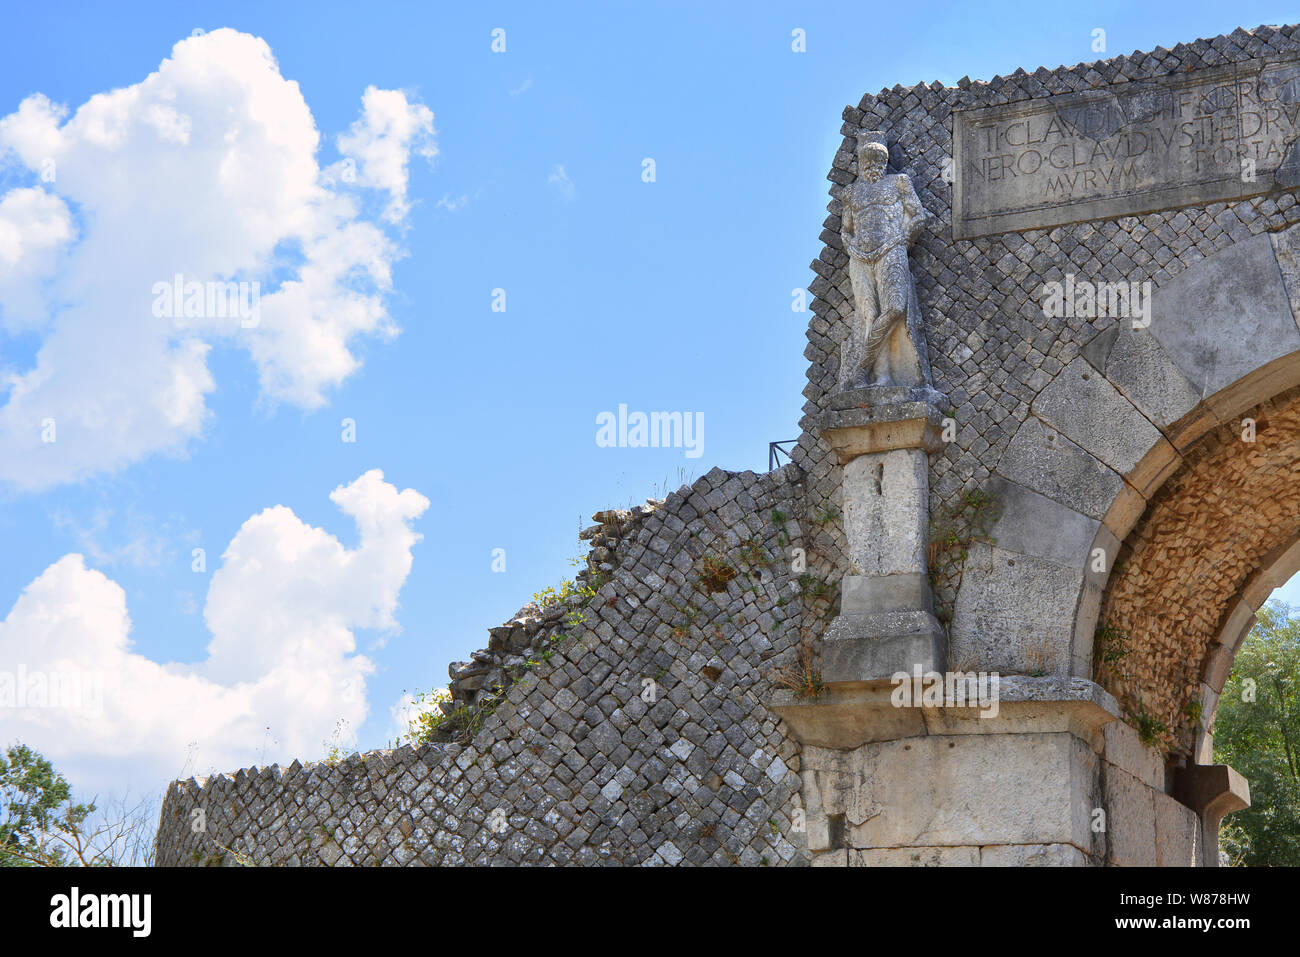 Sepino, Molise, Italia. Altilia il sito archeologico si trova in Sepino, in provincia di Campobasso. Il nome Altilia indica la città romana. Foto Stock